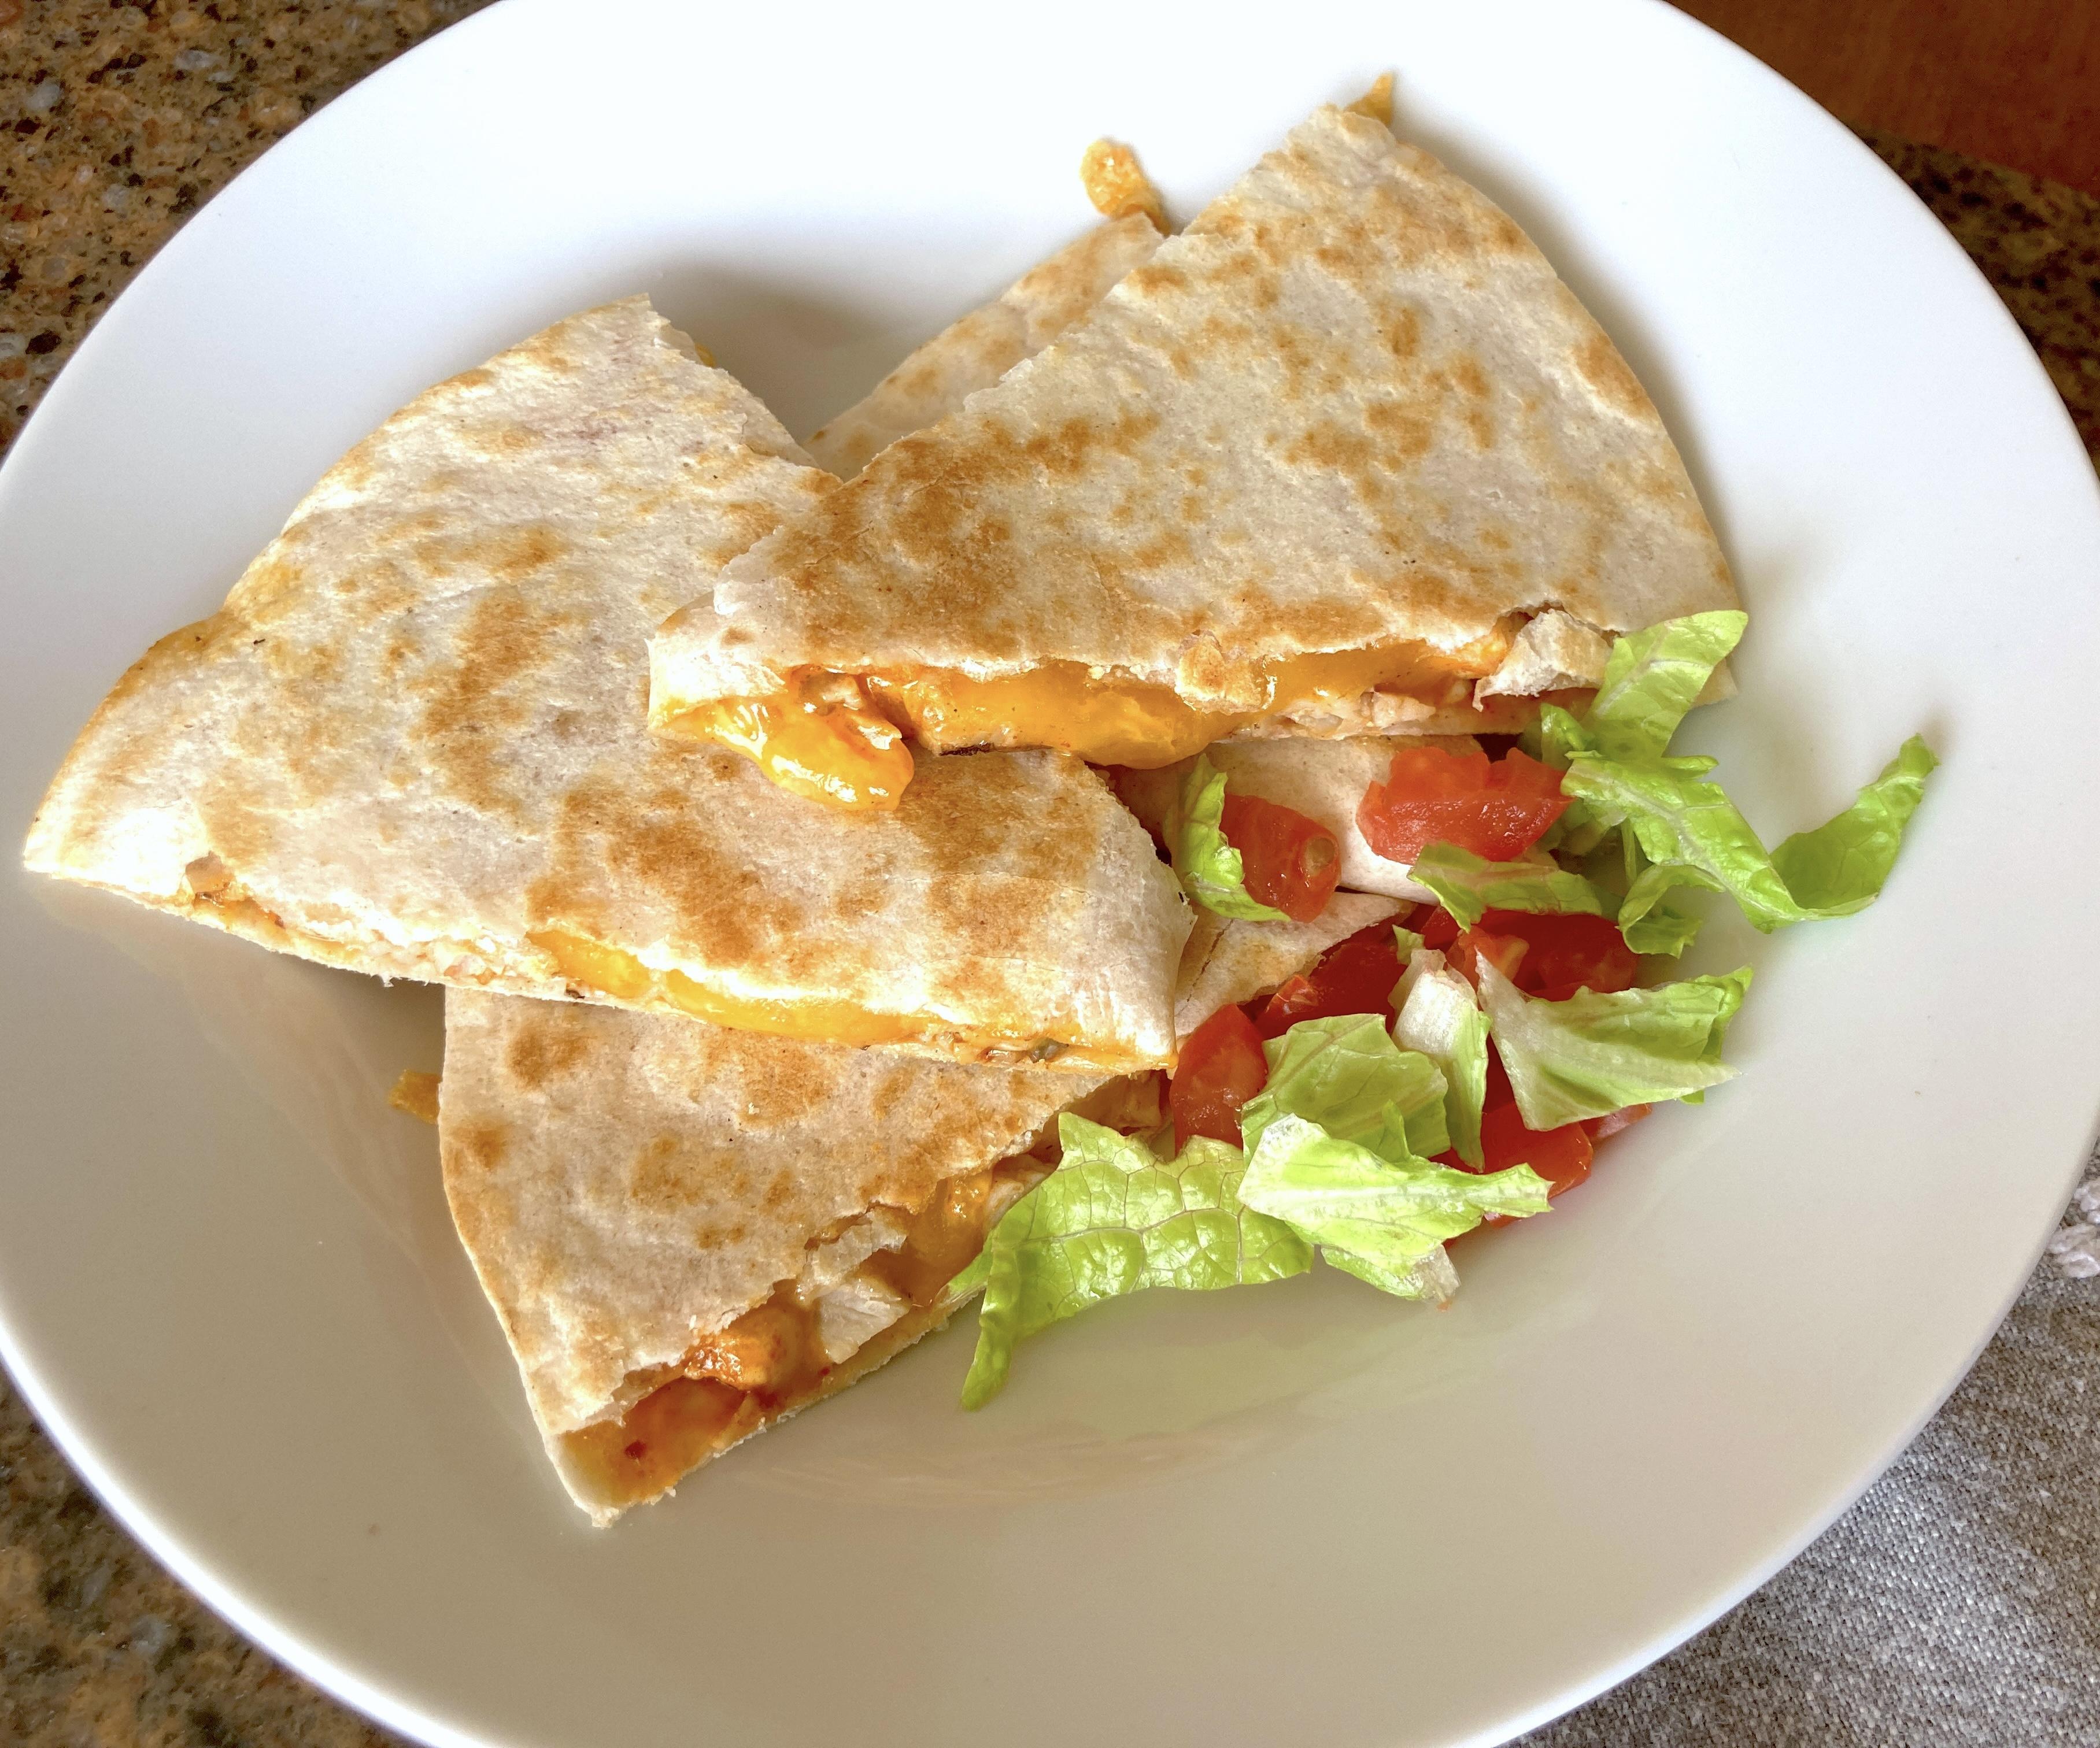 Easy Chicken Quesadillas - Taco Bell Copycat Recipe